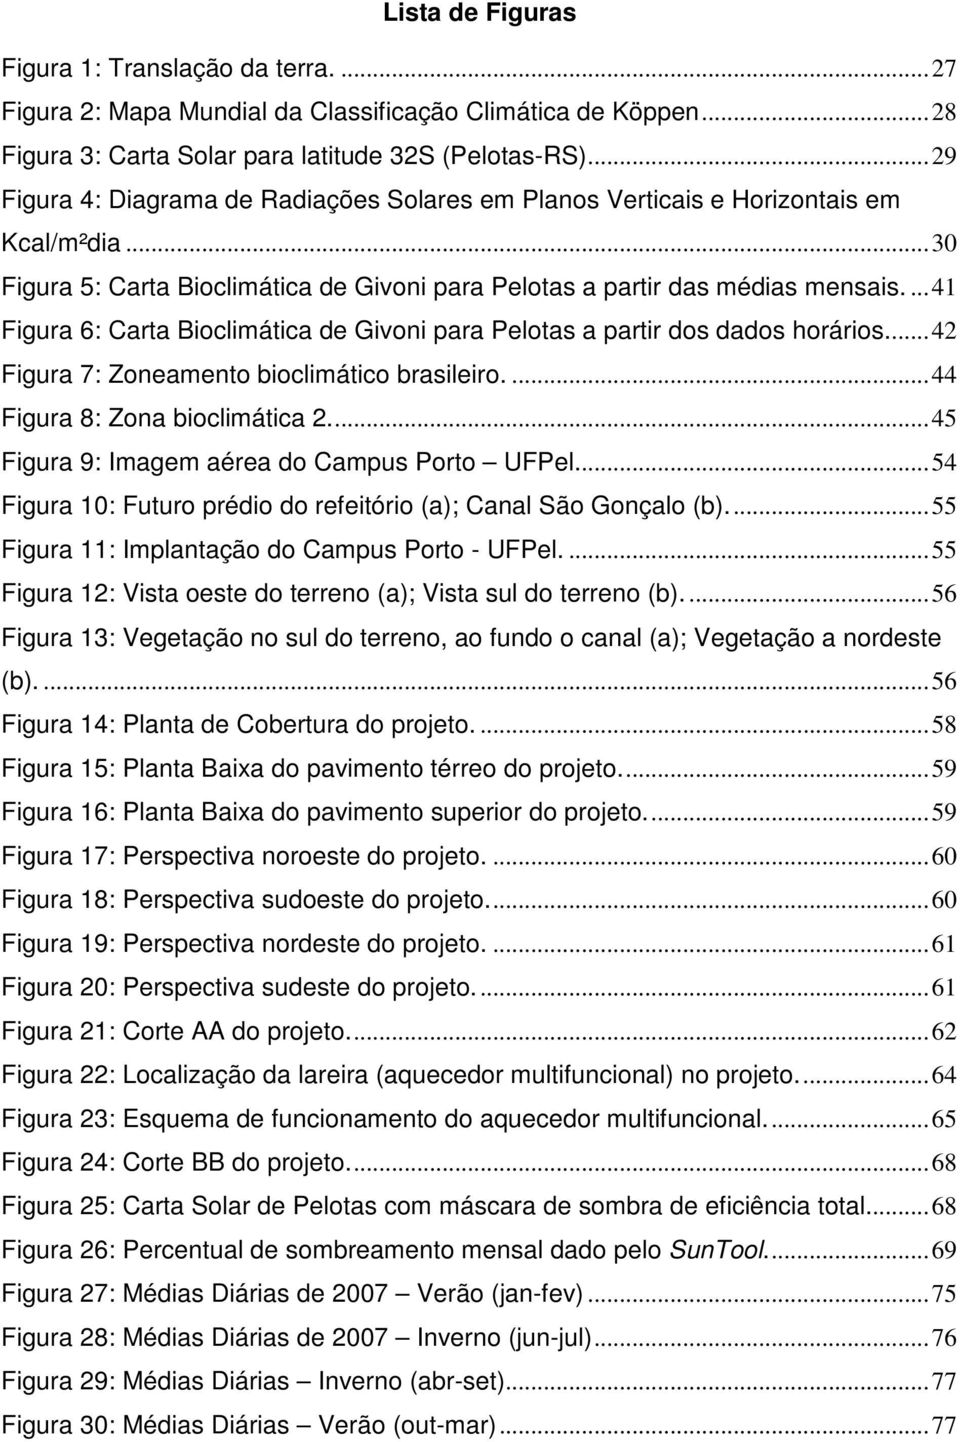 ... 41 Figura 6: Carta Bioclimática de Givoni para Pelotas a partir dos dados horários.... 42 Figura 7: Zoneamento bioclimático brasileiro.... 44 Figura 8: Zona bioclimática 2.